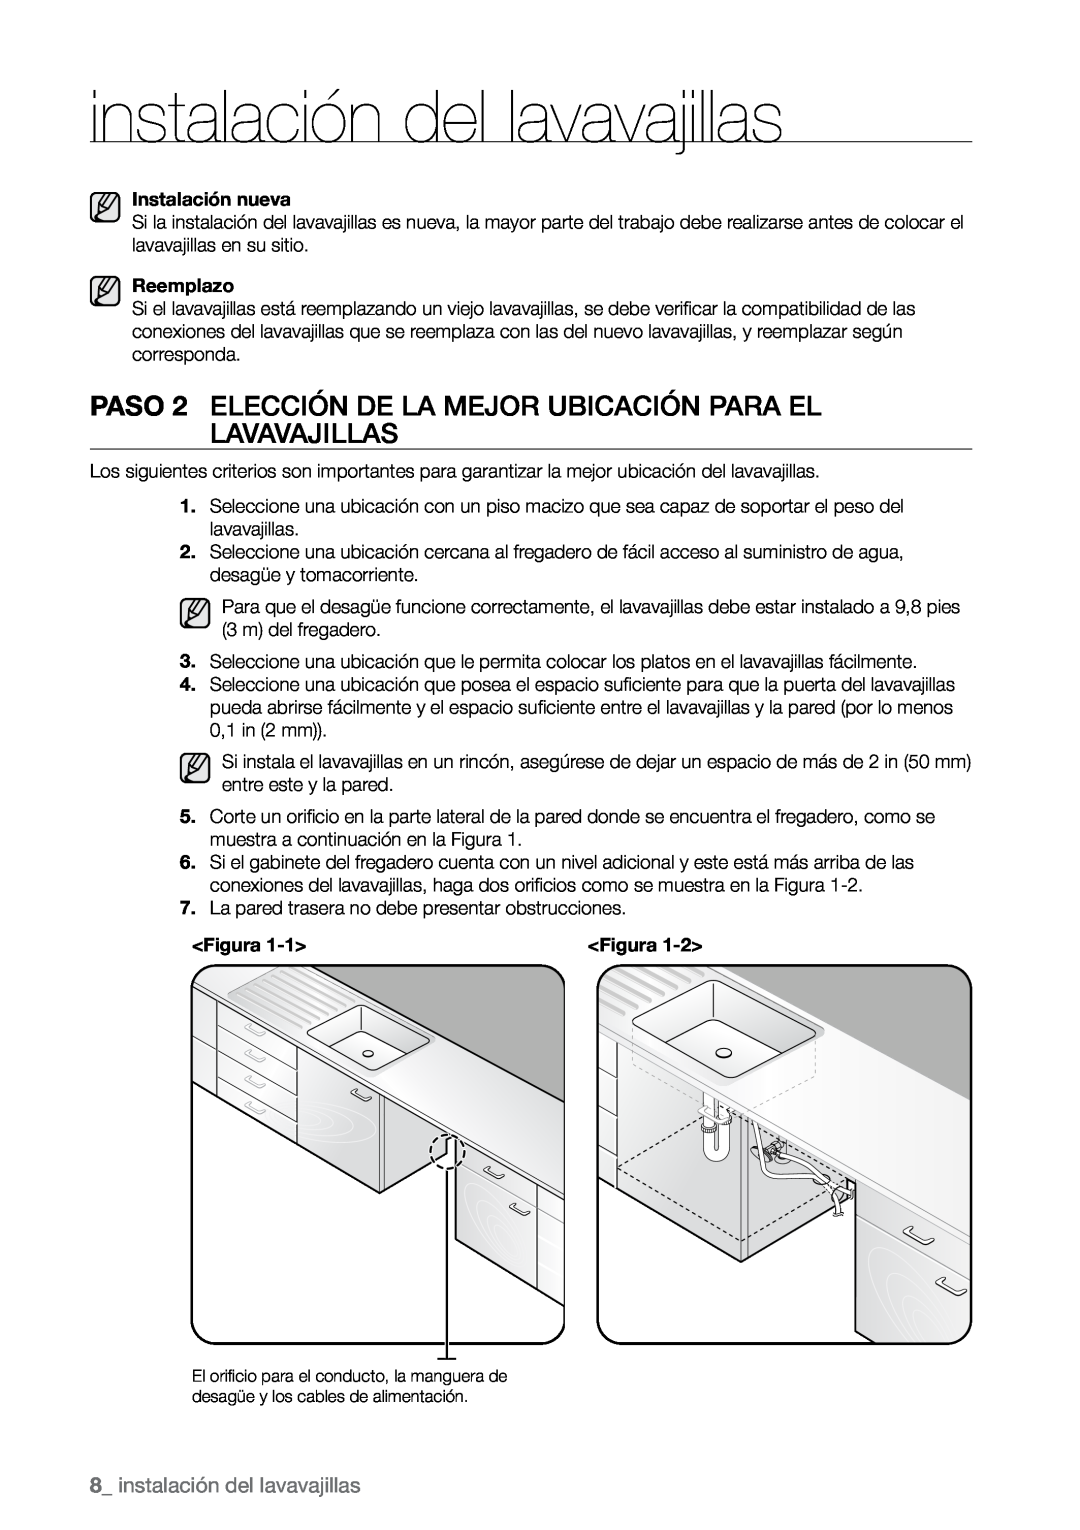 Samsung DMR77, DMR78, DMR57 manual  instalación del lavavajillas, Instalación nueva, Reemplazo, Figura 